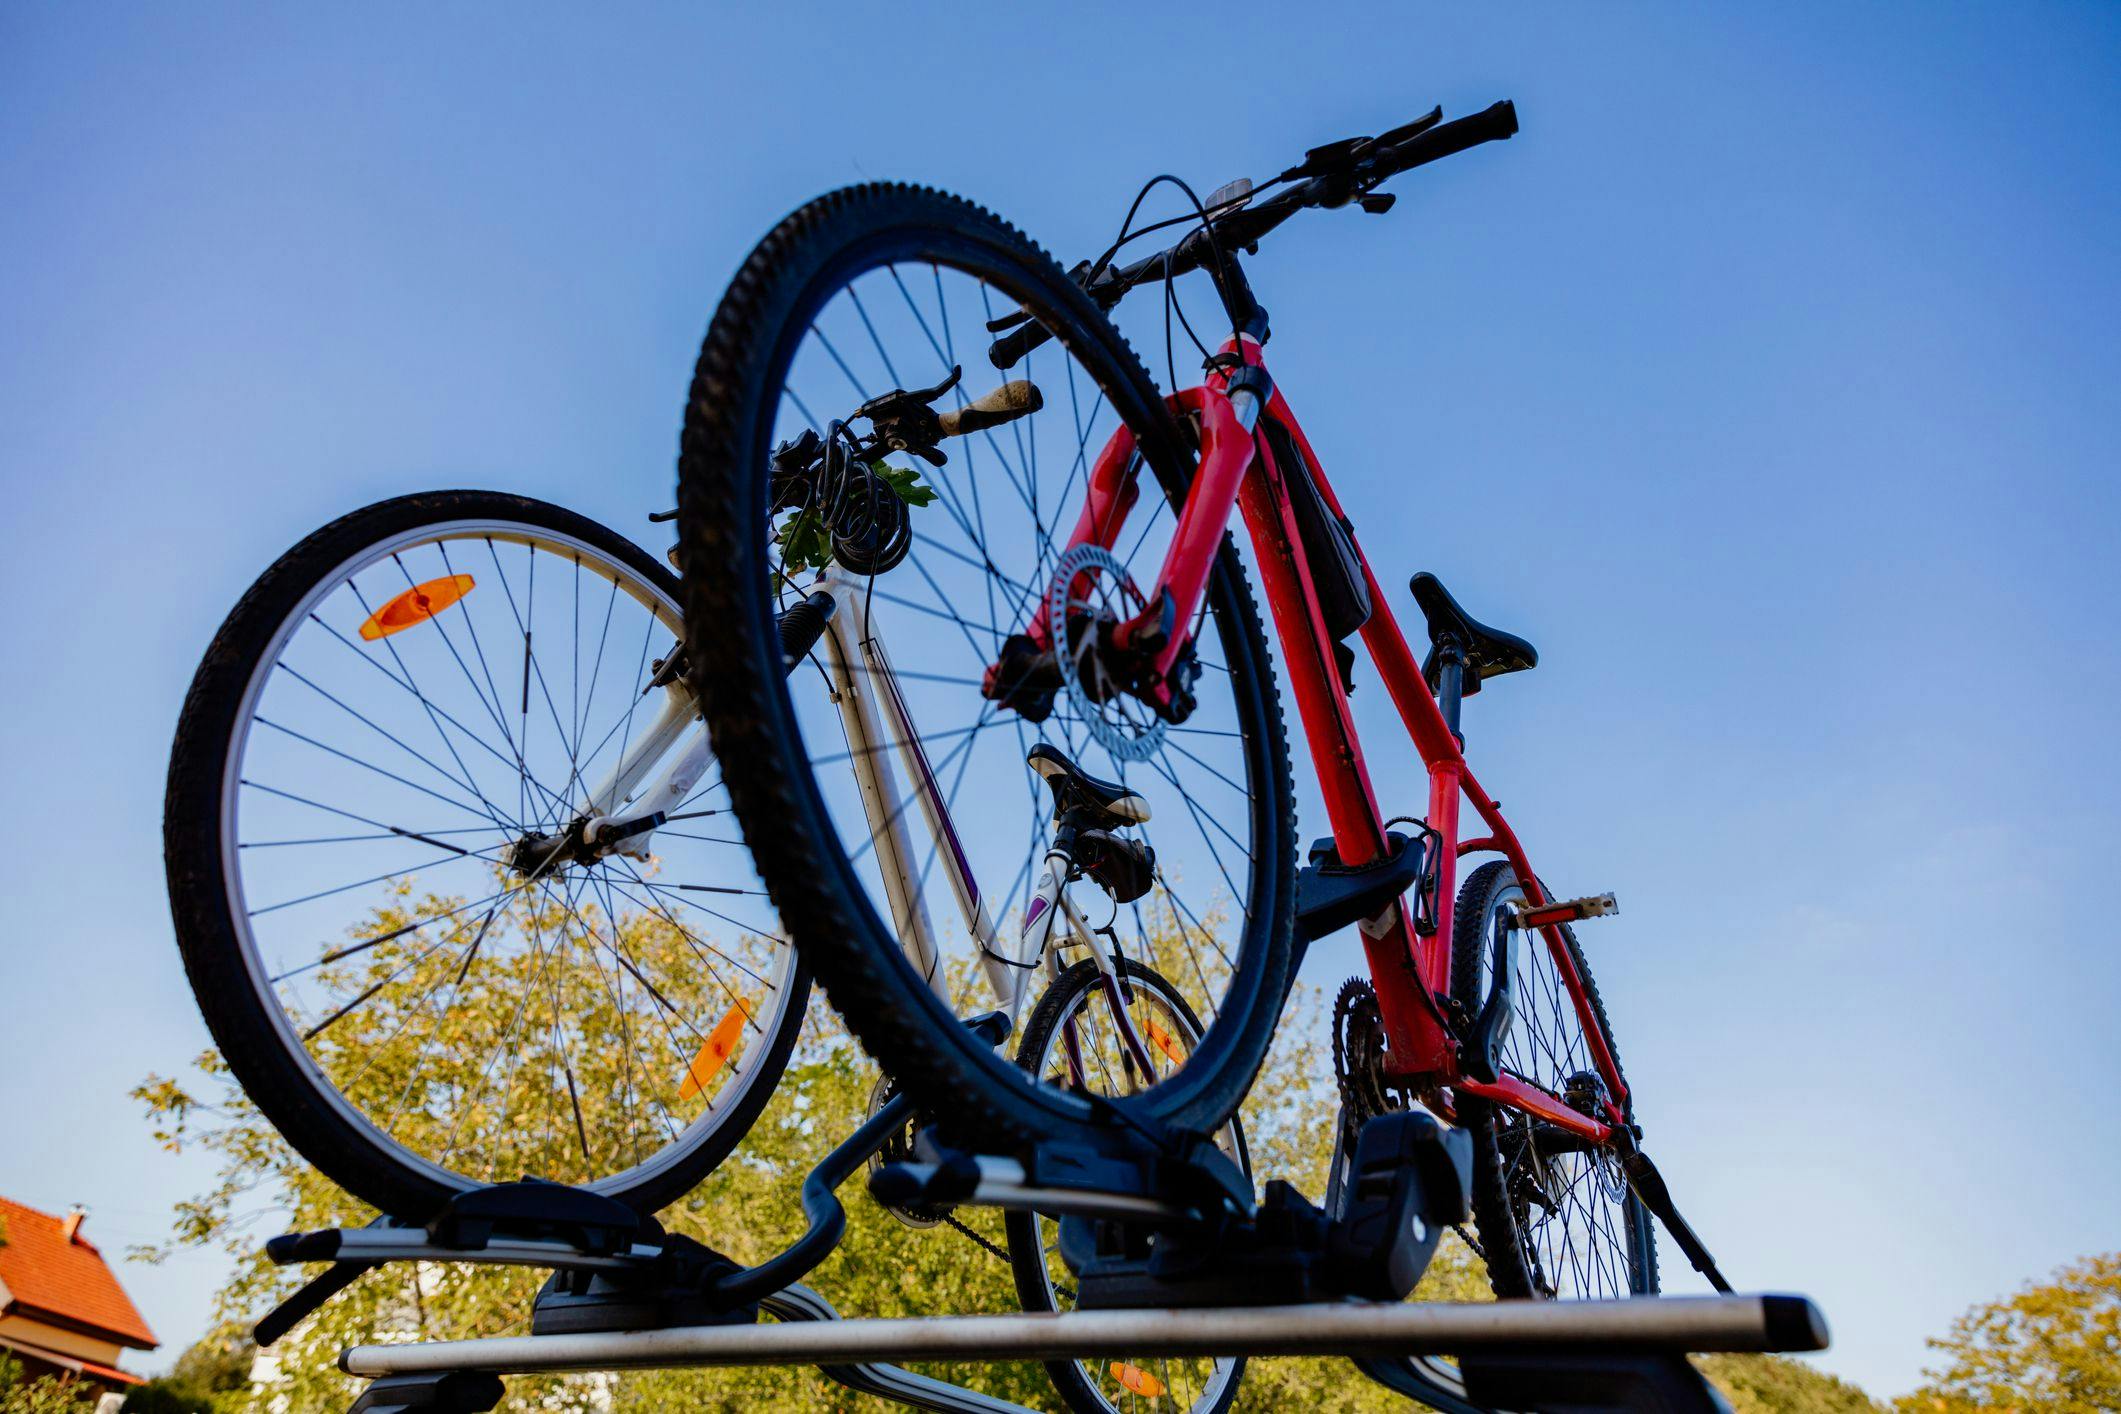 Transporter son antivol vélo : Les fixations et housses